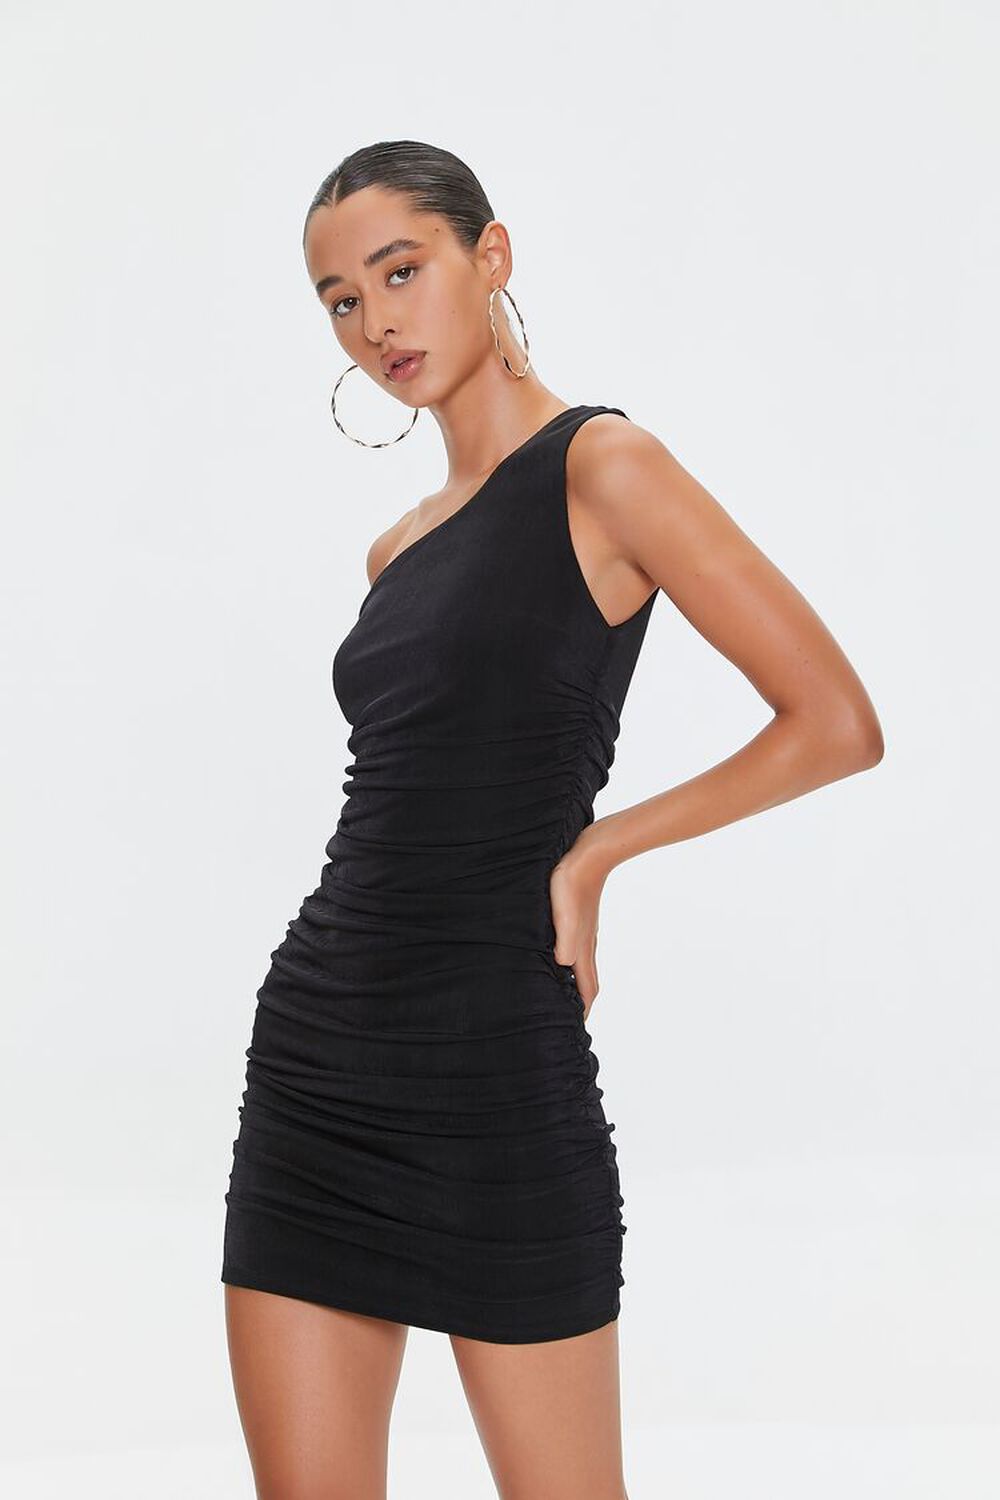 BLACK Ruched One-Shoulder Mini Dress, image 1